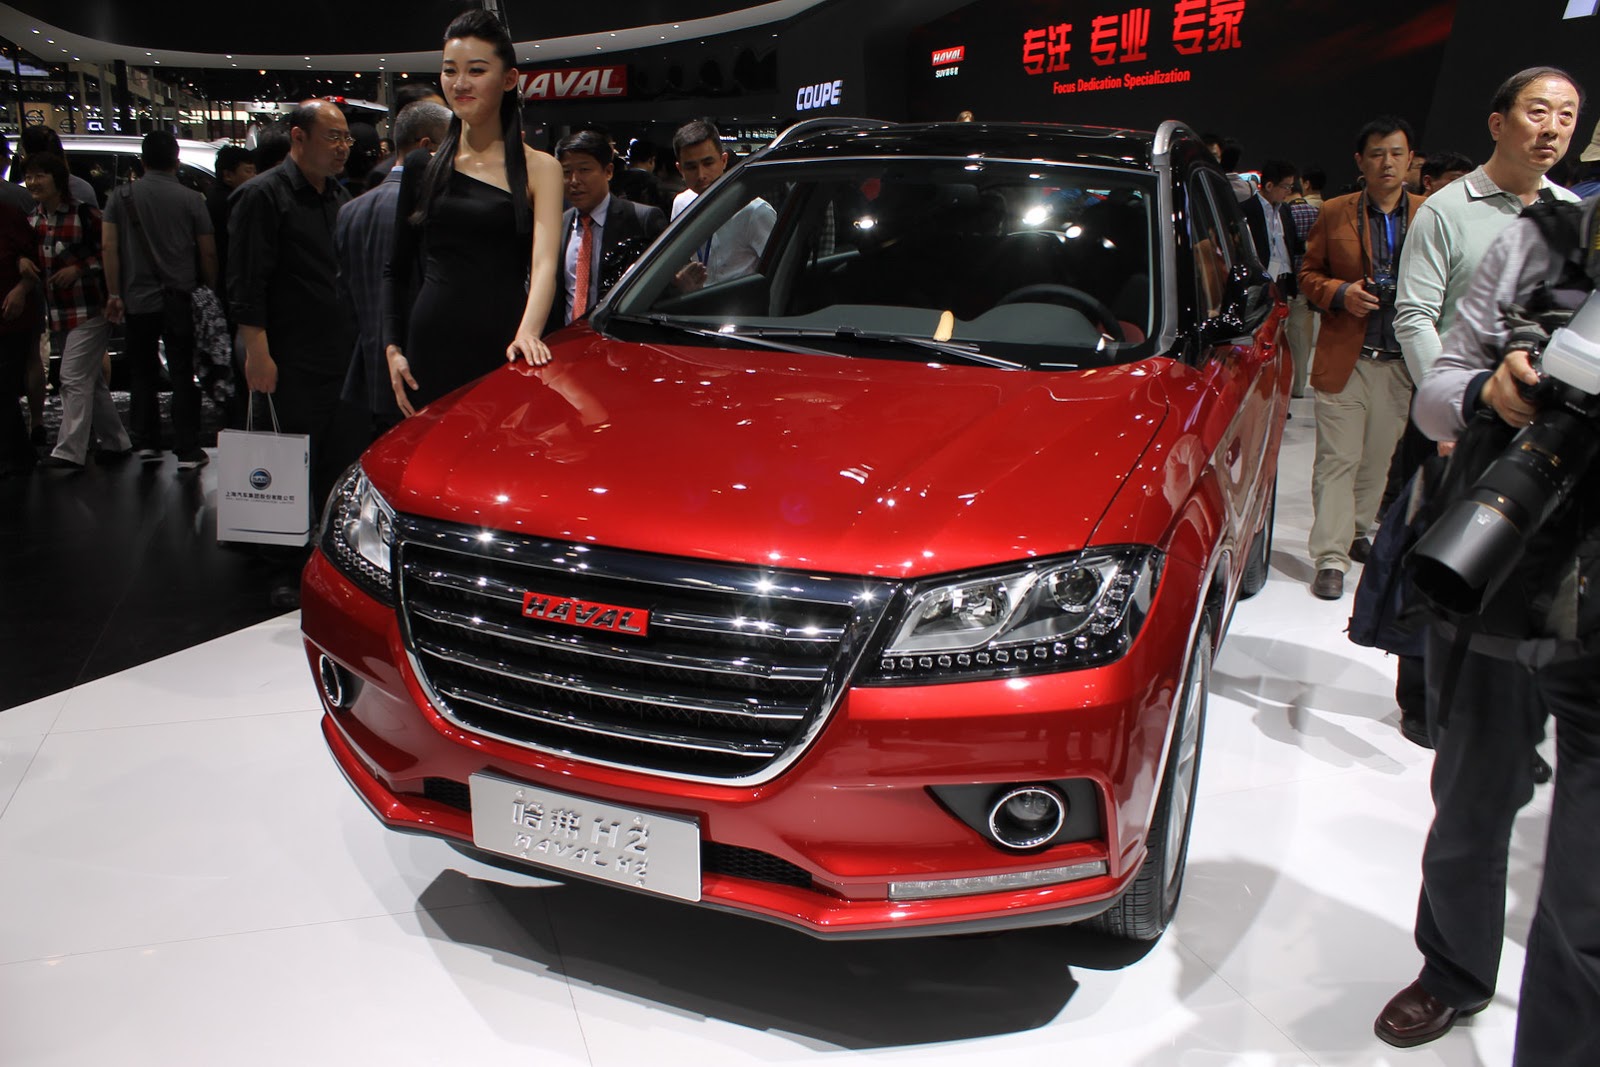 Китайские автомобили в россии цены обзор моделей: Модели китайских легковых автомобилей в России